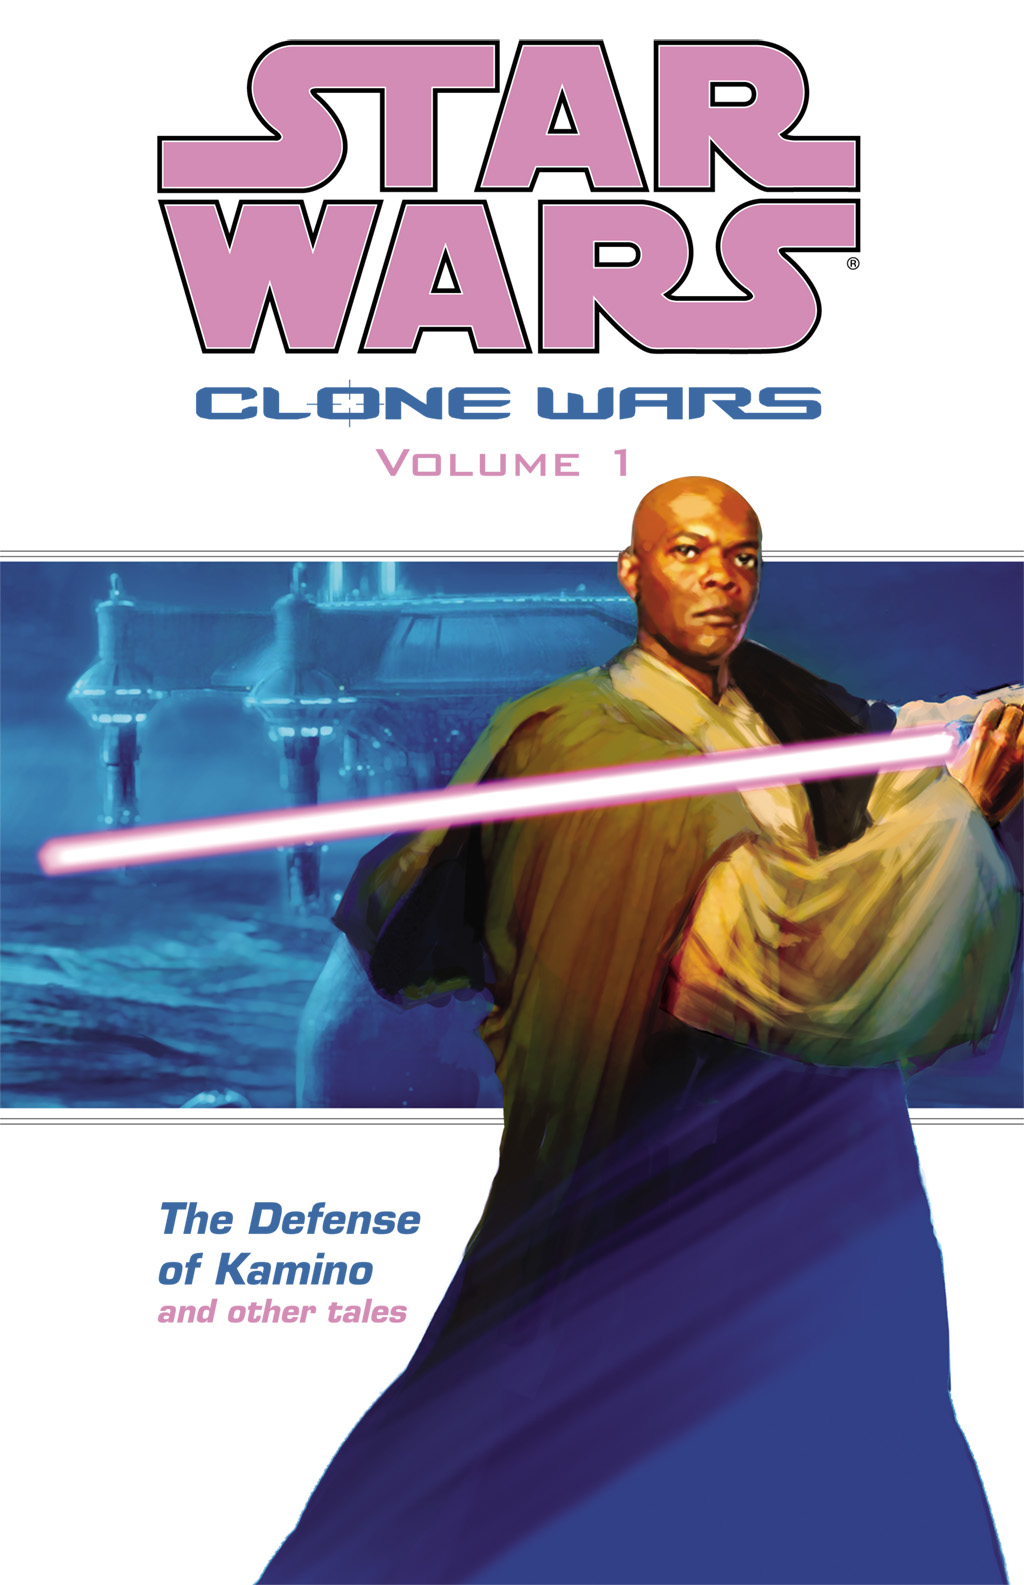 Read online Star Wars: Clone Wars comic -  Issue # TPB 1 - 1